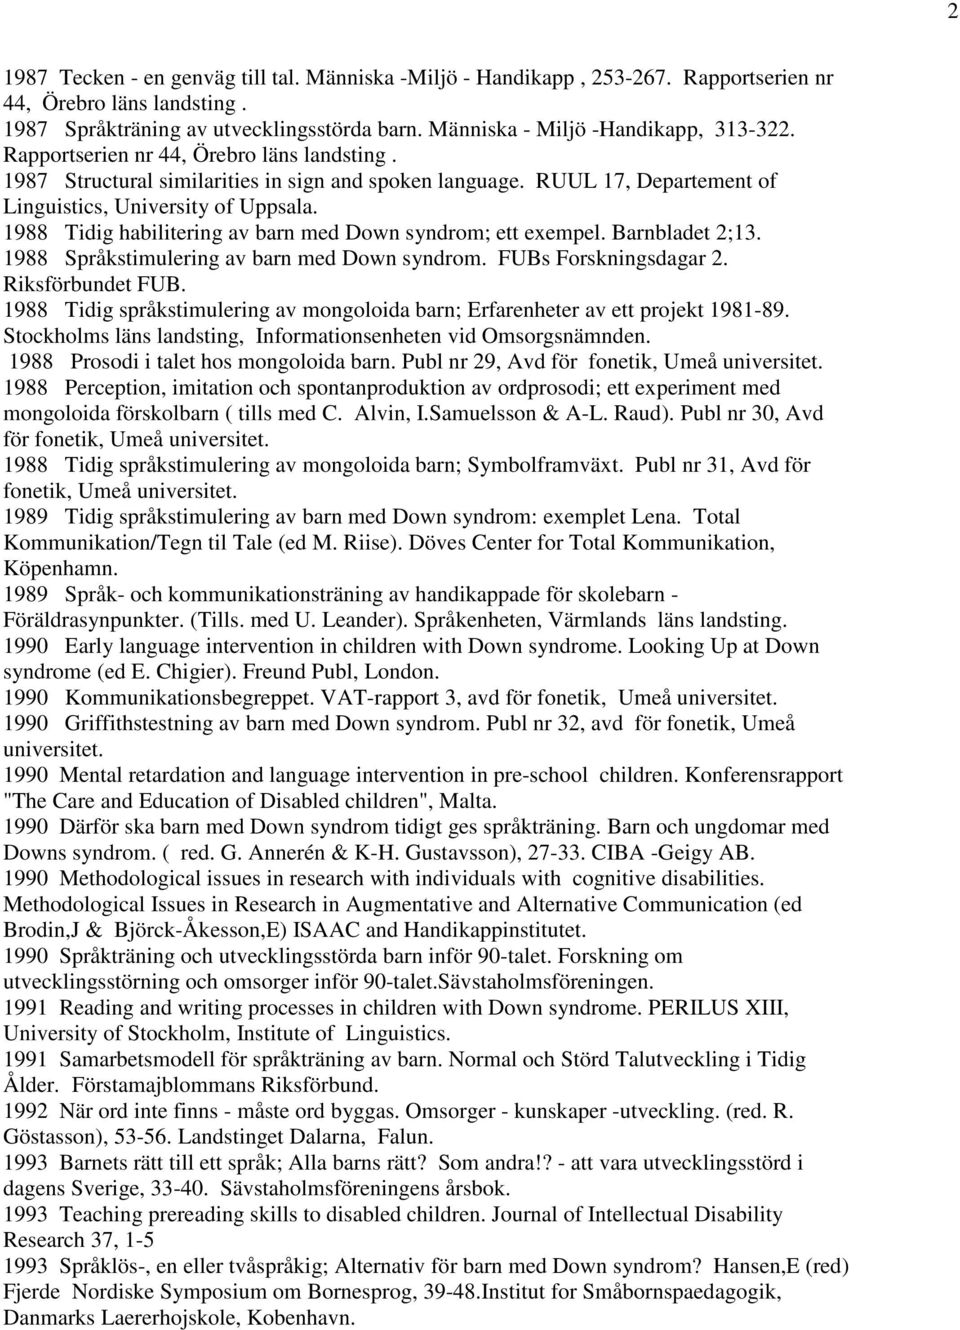 1988 Tidig habilitering av barn med Down syndrom; ett exempel. Barnbladet 2;13. 1988 Språkstimulering av barn med Down syndrom. FUBs Forskningsdagar 2. Riksförbundet FUB.